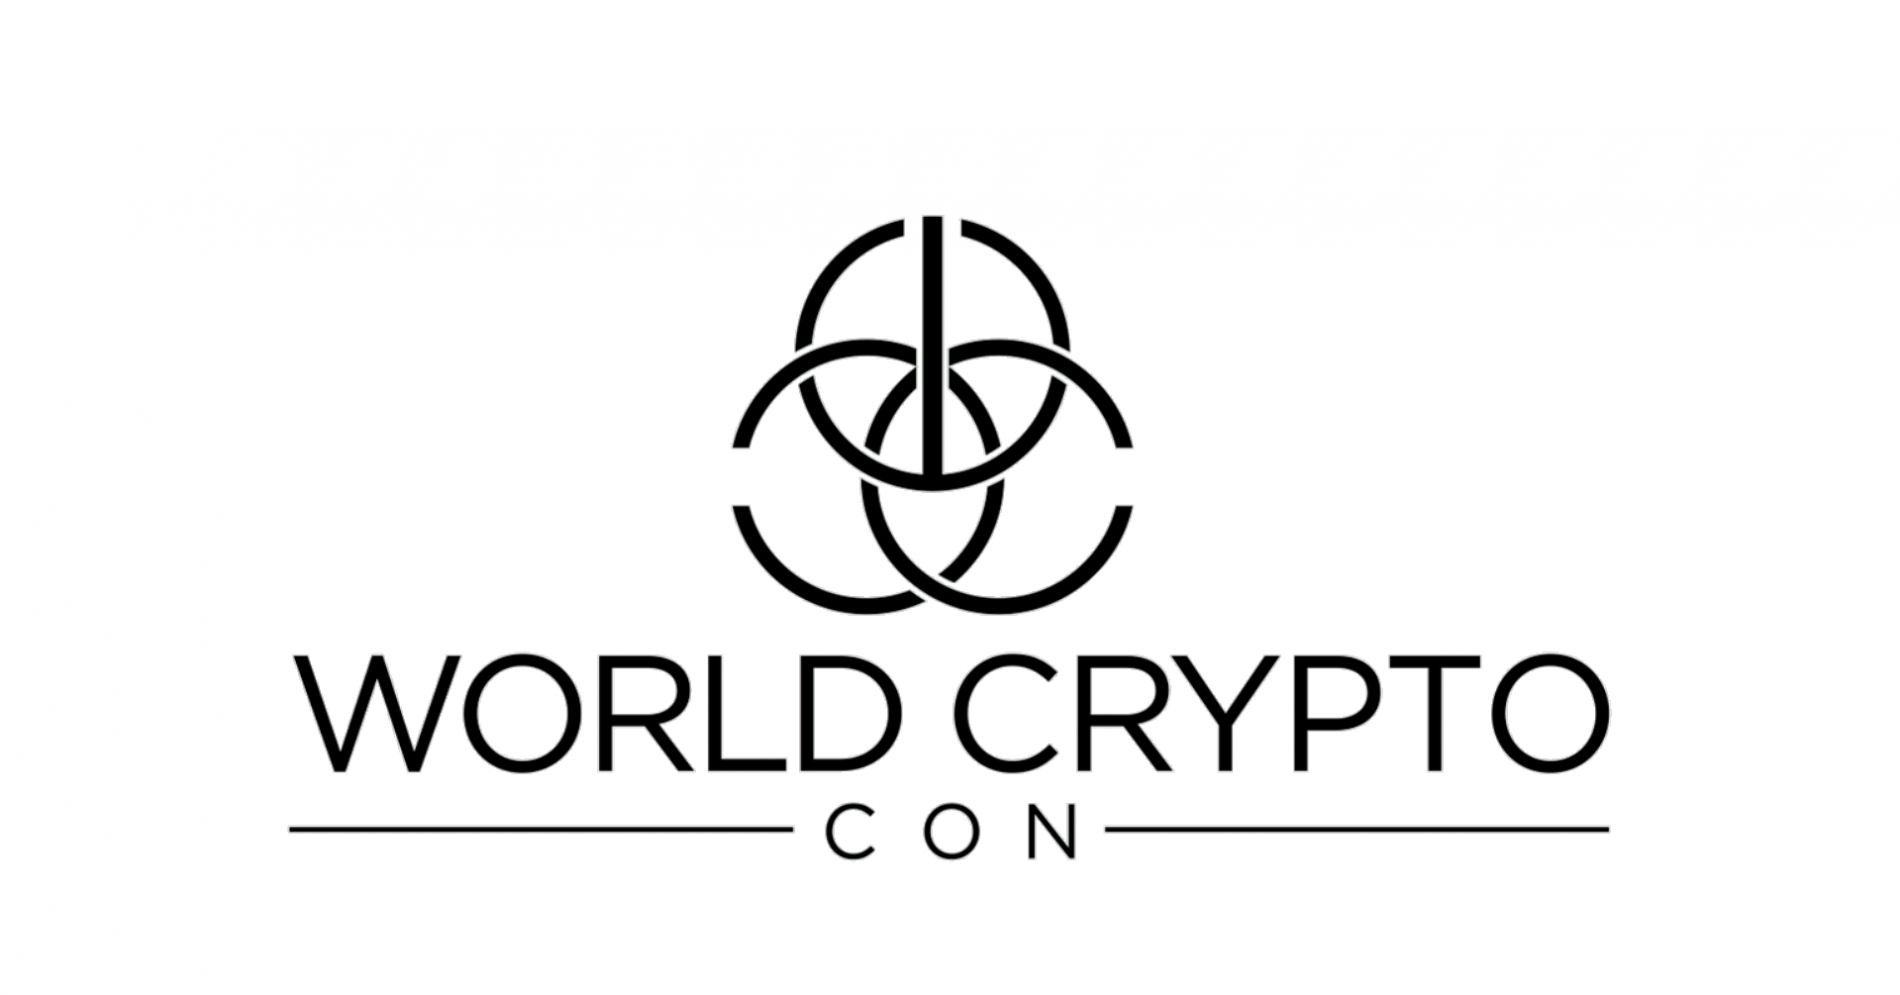 Dünya Kripto Konferansı, 31 Ekim – 2 Kasım 2018 tarihleri arasında  Las Vegas’ta gerçekleşecek!